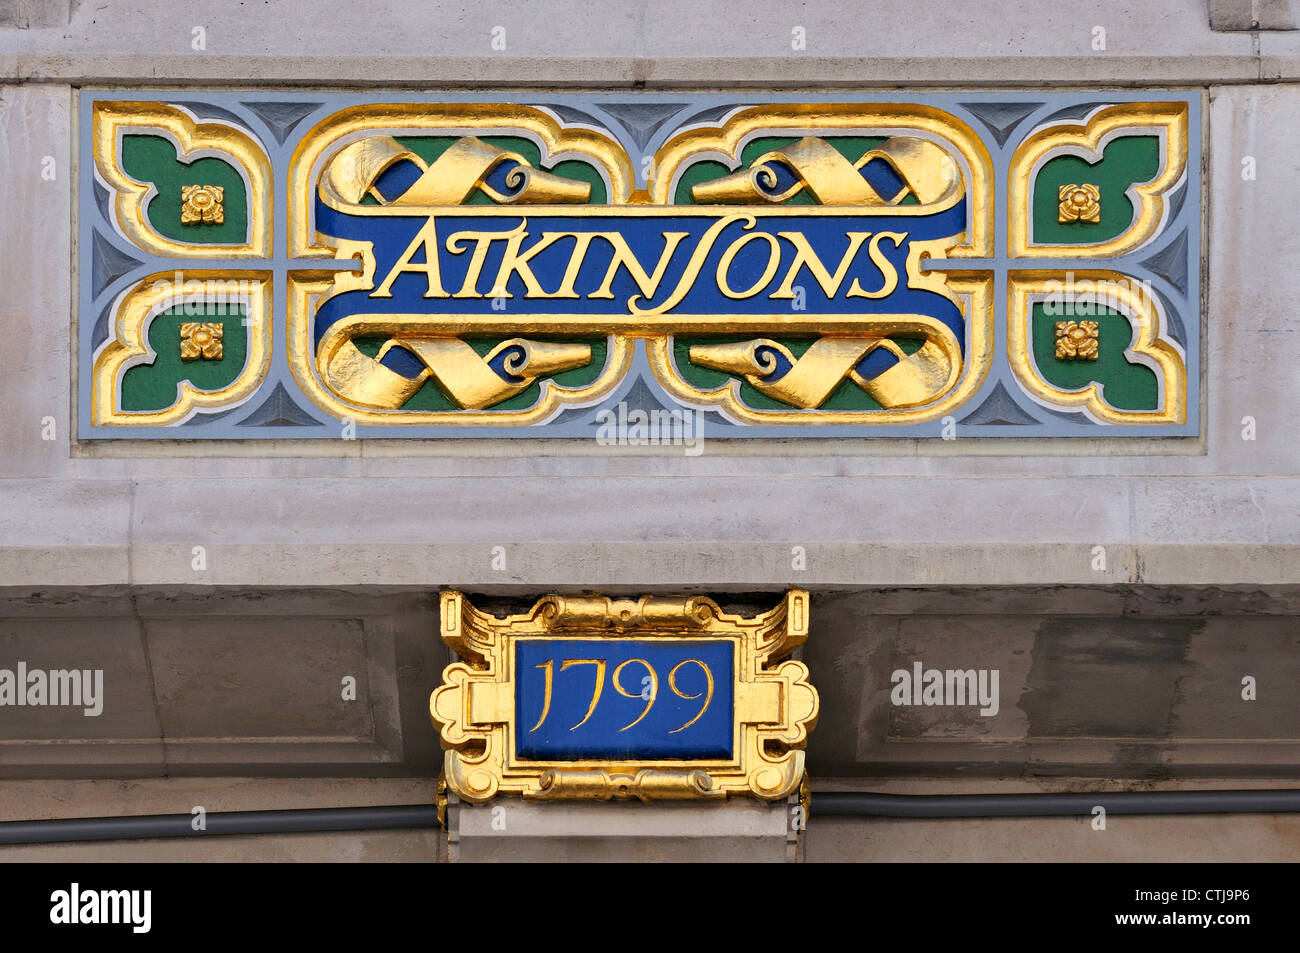 Londres, Angleterre, Royaume-Uni. Atkinsons Boutique parfum dans Old Bond Street - Détail de façade Banque D'Images